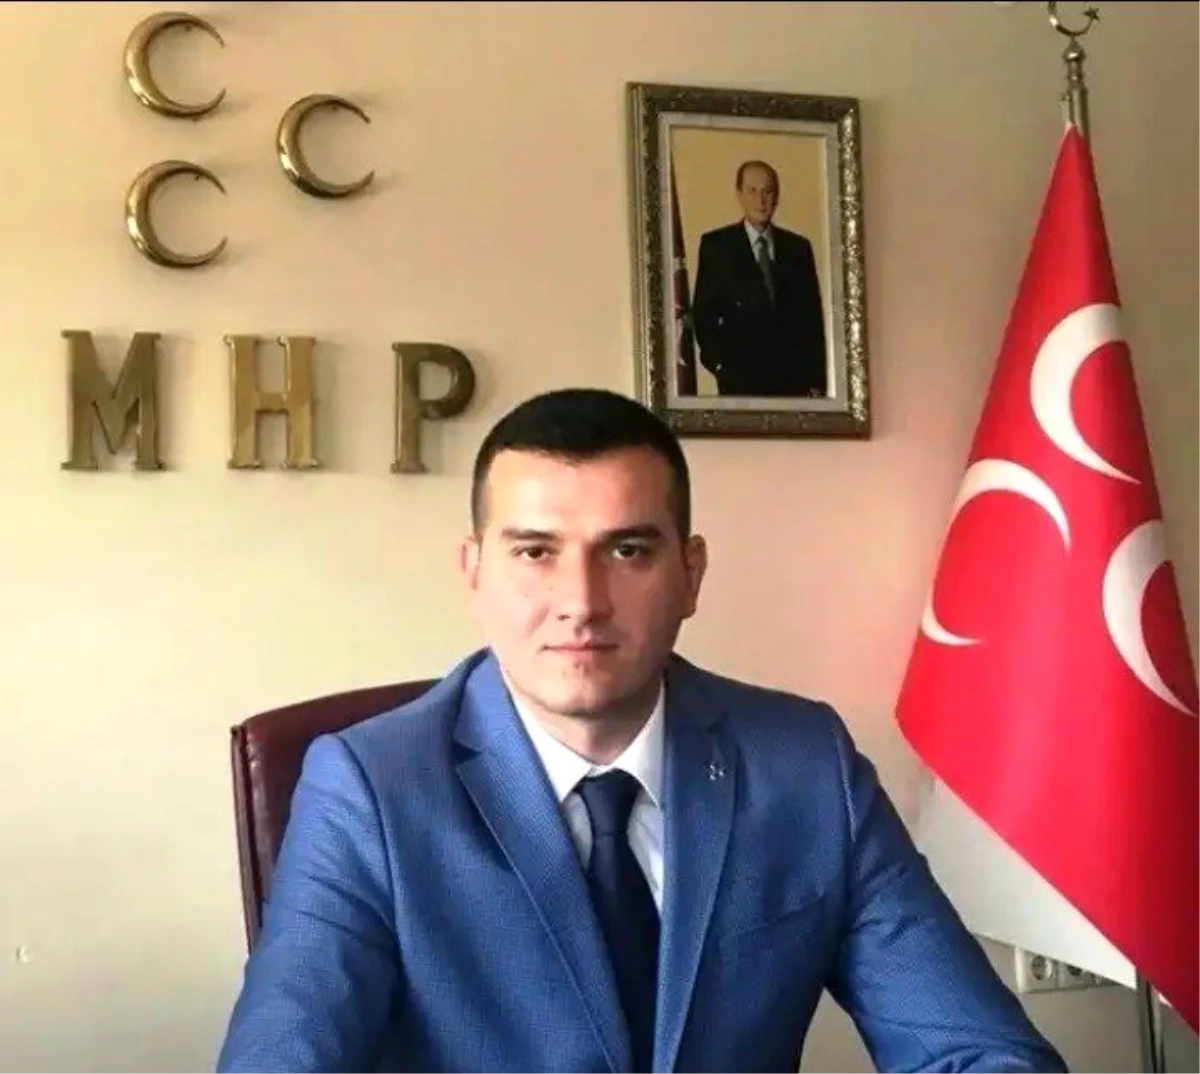 Aydın MHP kahraman gazileri unutmadı